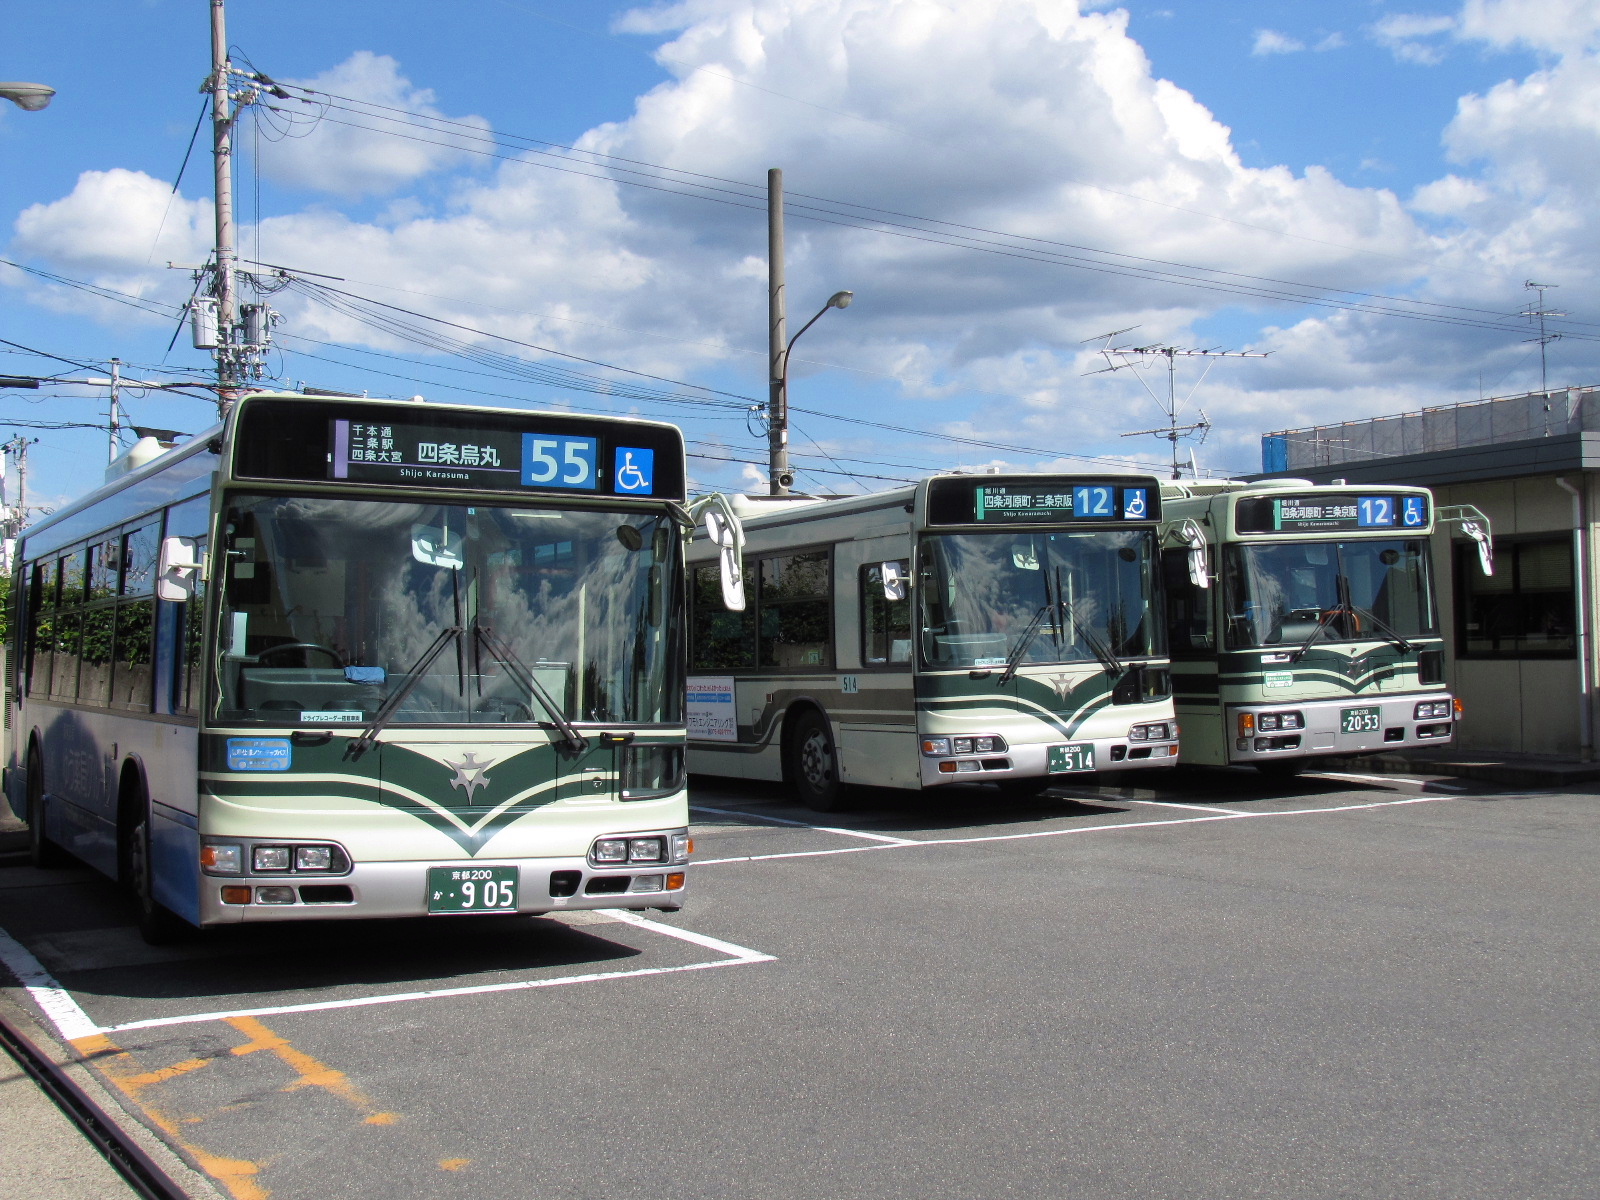 京都市営バスの方向幕【特集・方向幕の世界】 - バス総合情報誌「バス